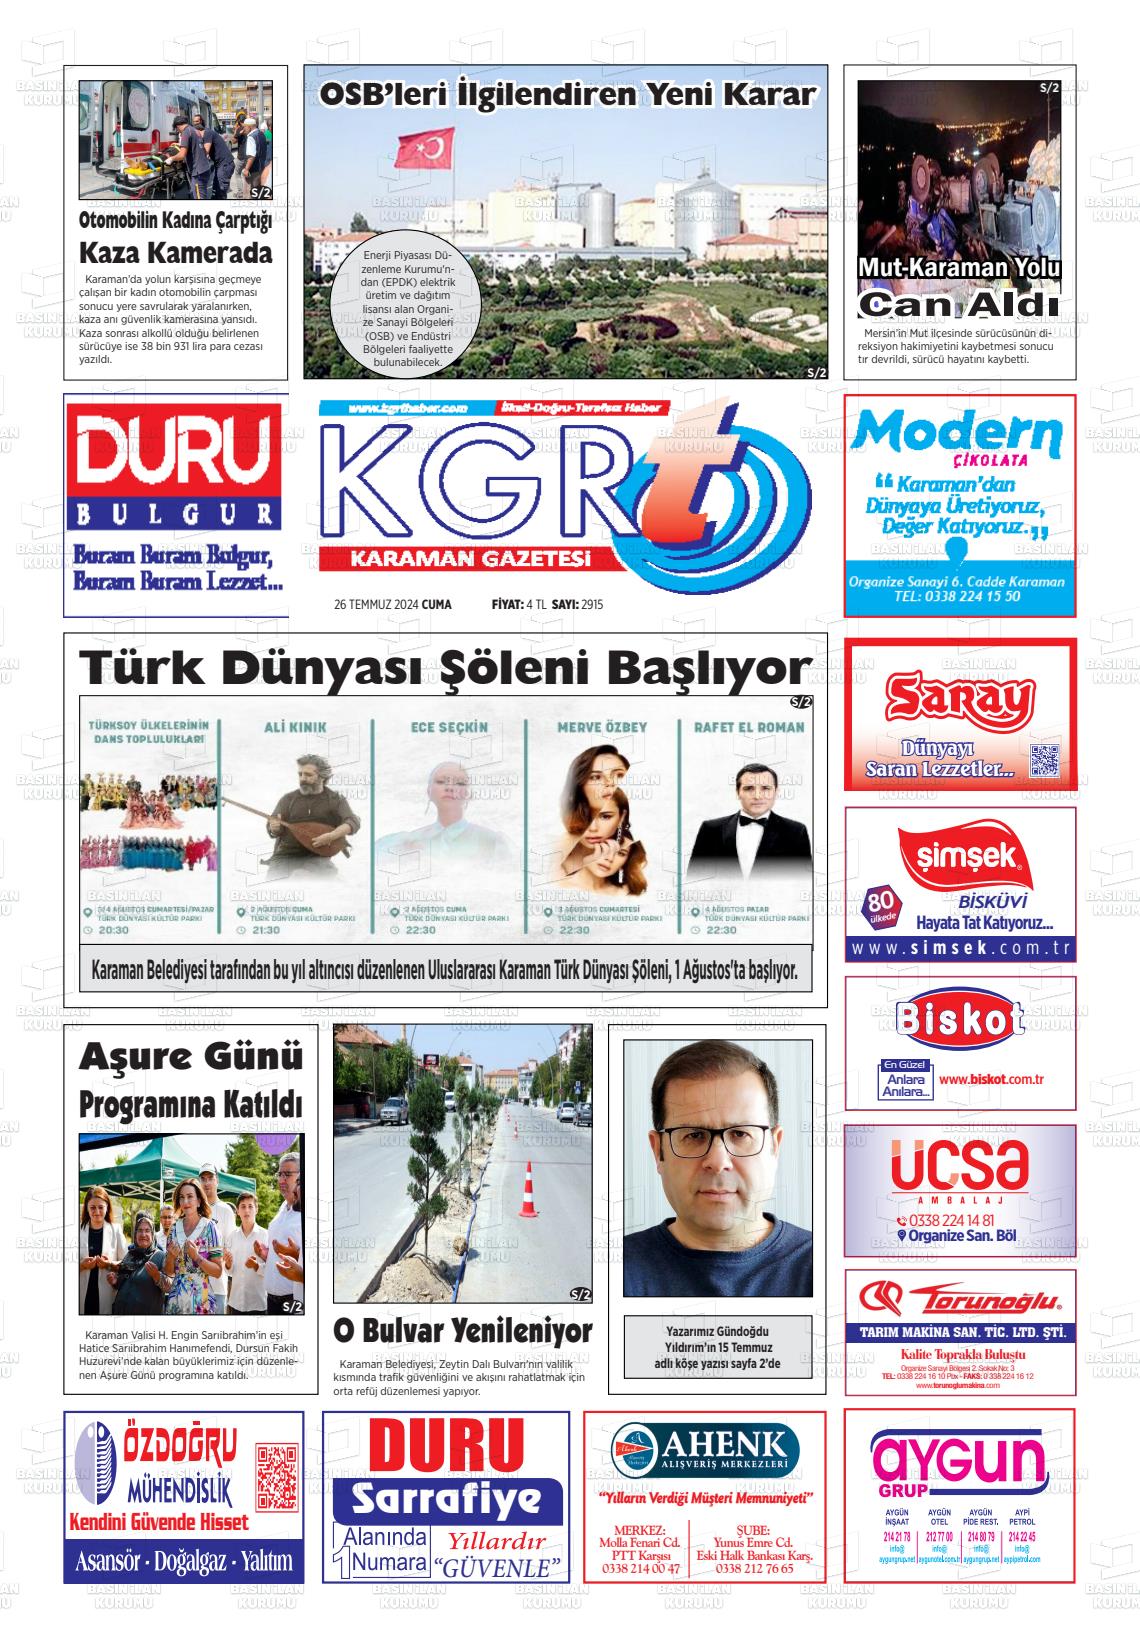 27 Temmuz 2024 Kgrt Karaman Gazete Manşeti